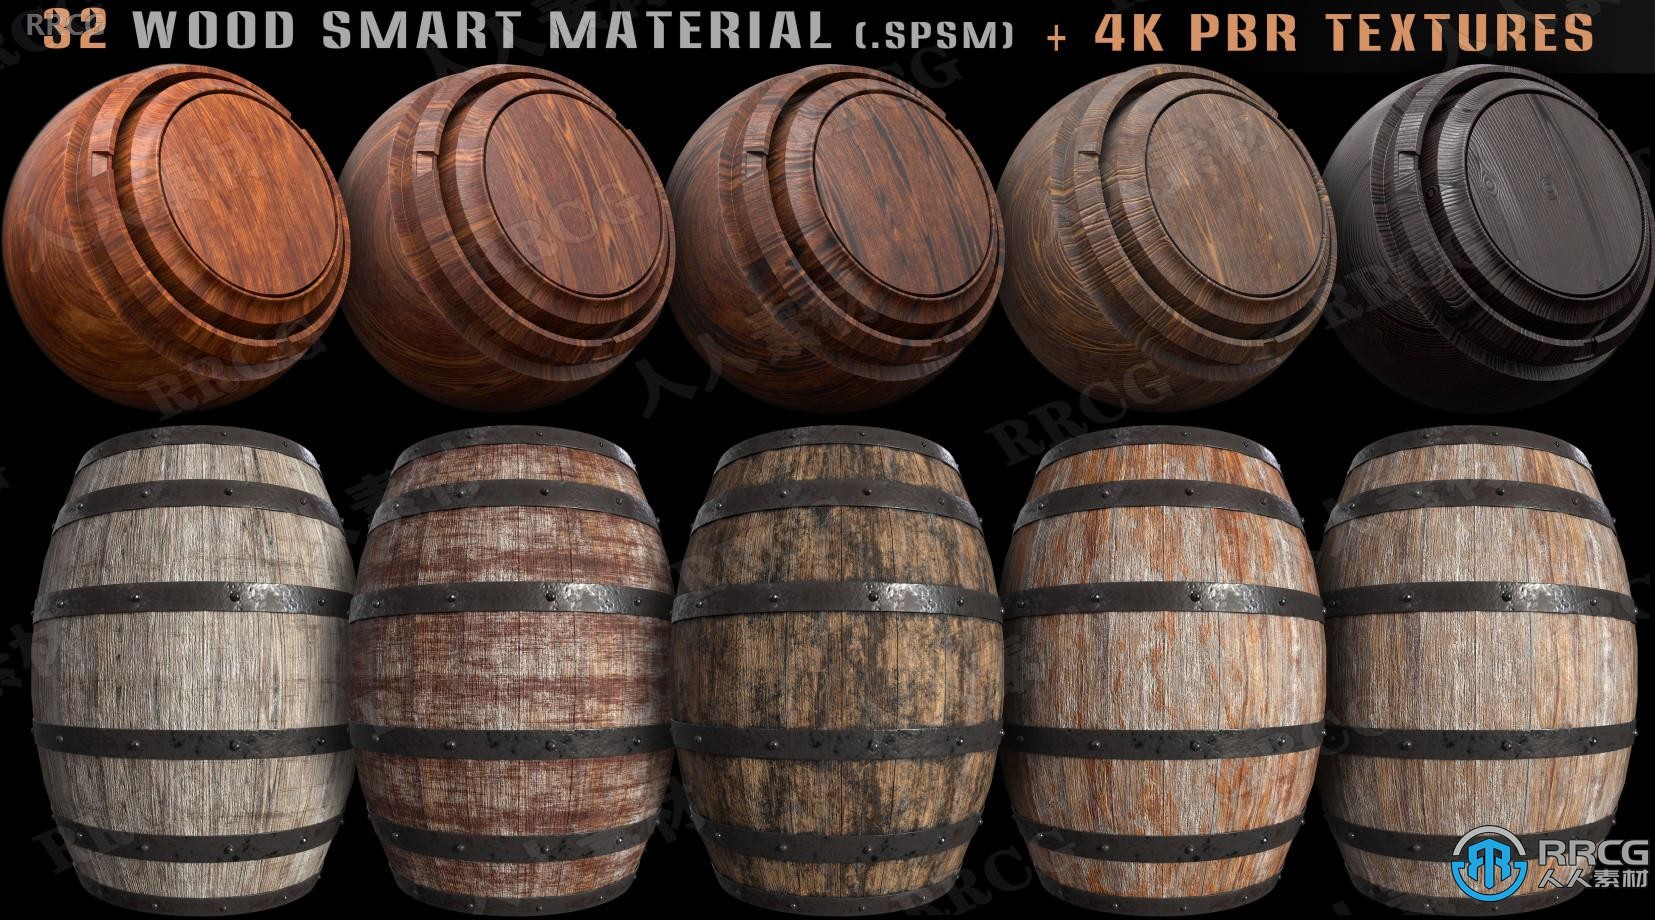 32组木材木质智能PBR纹理材质贴图合集 spms格式